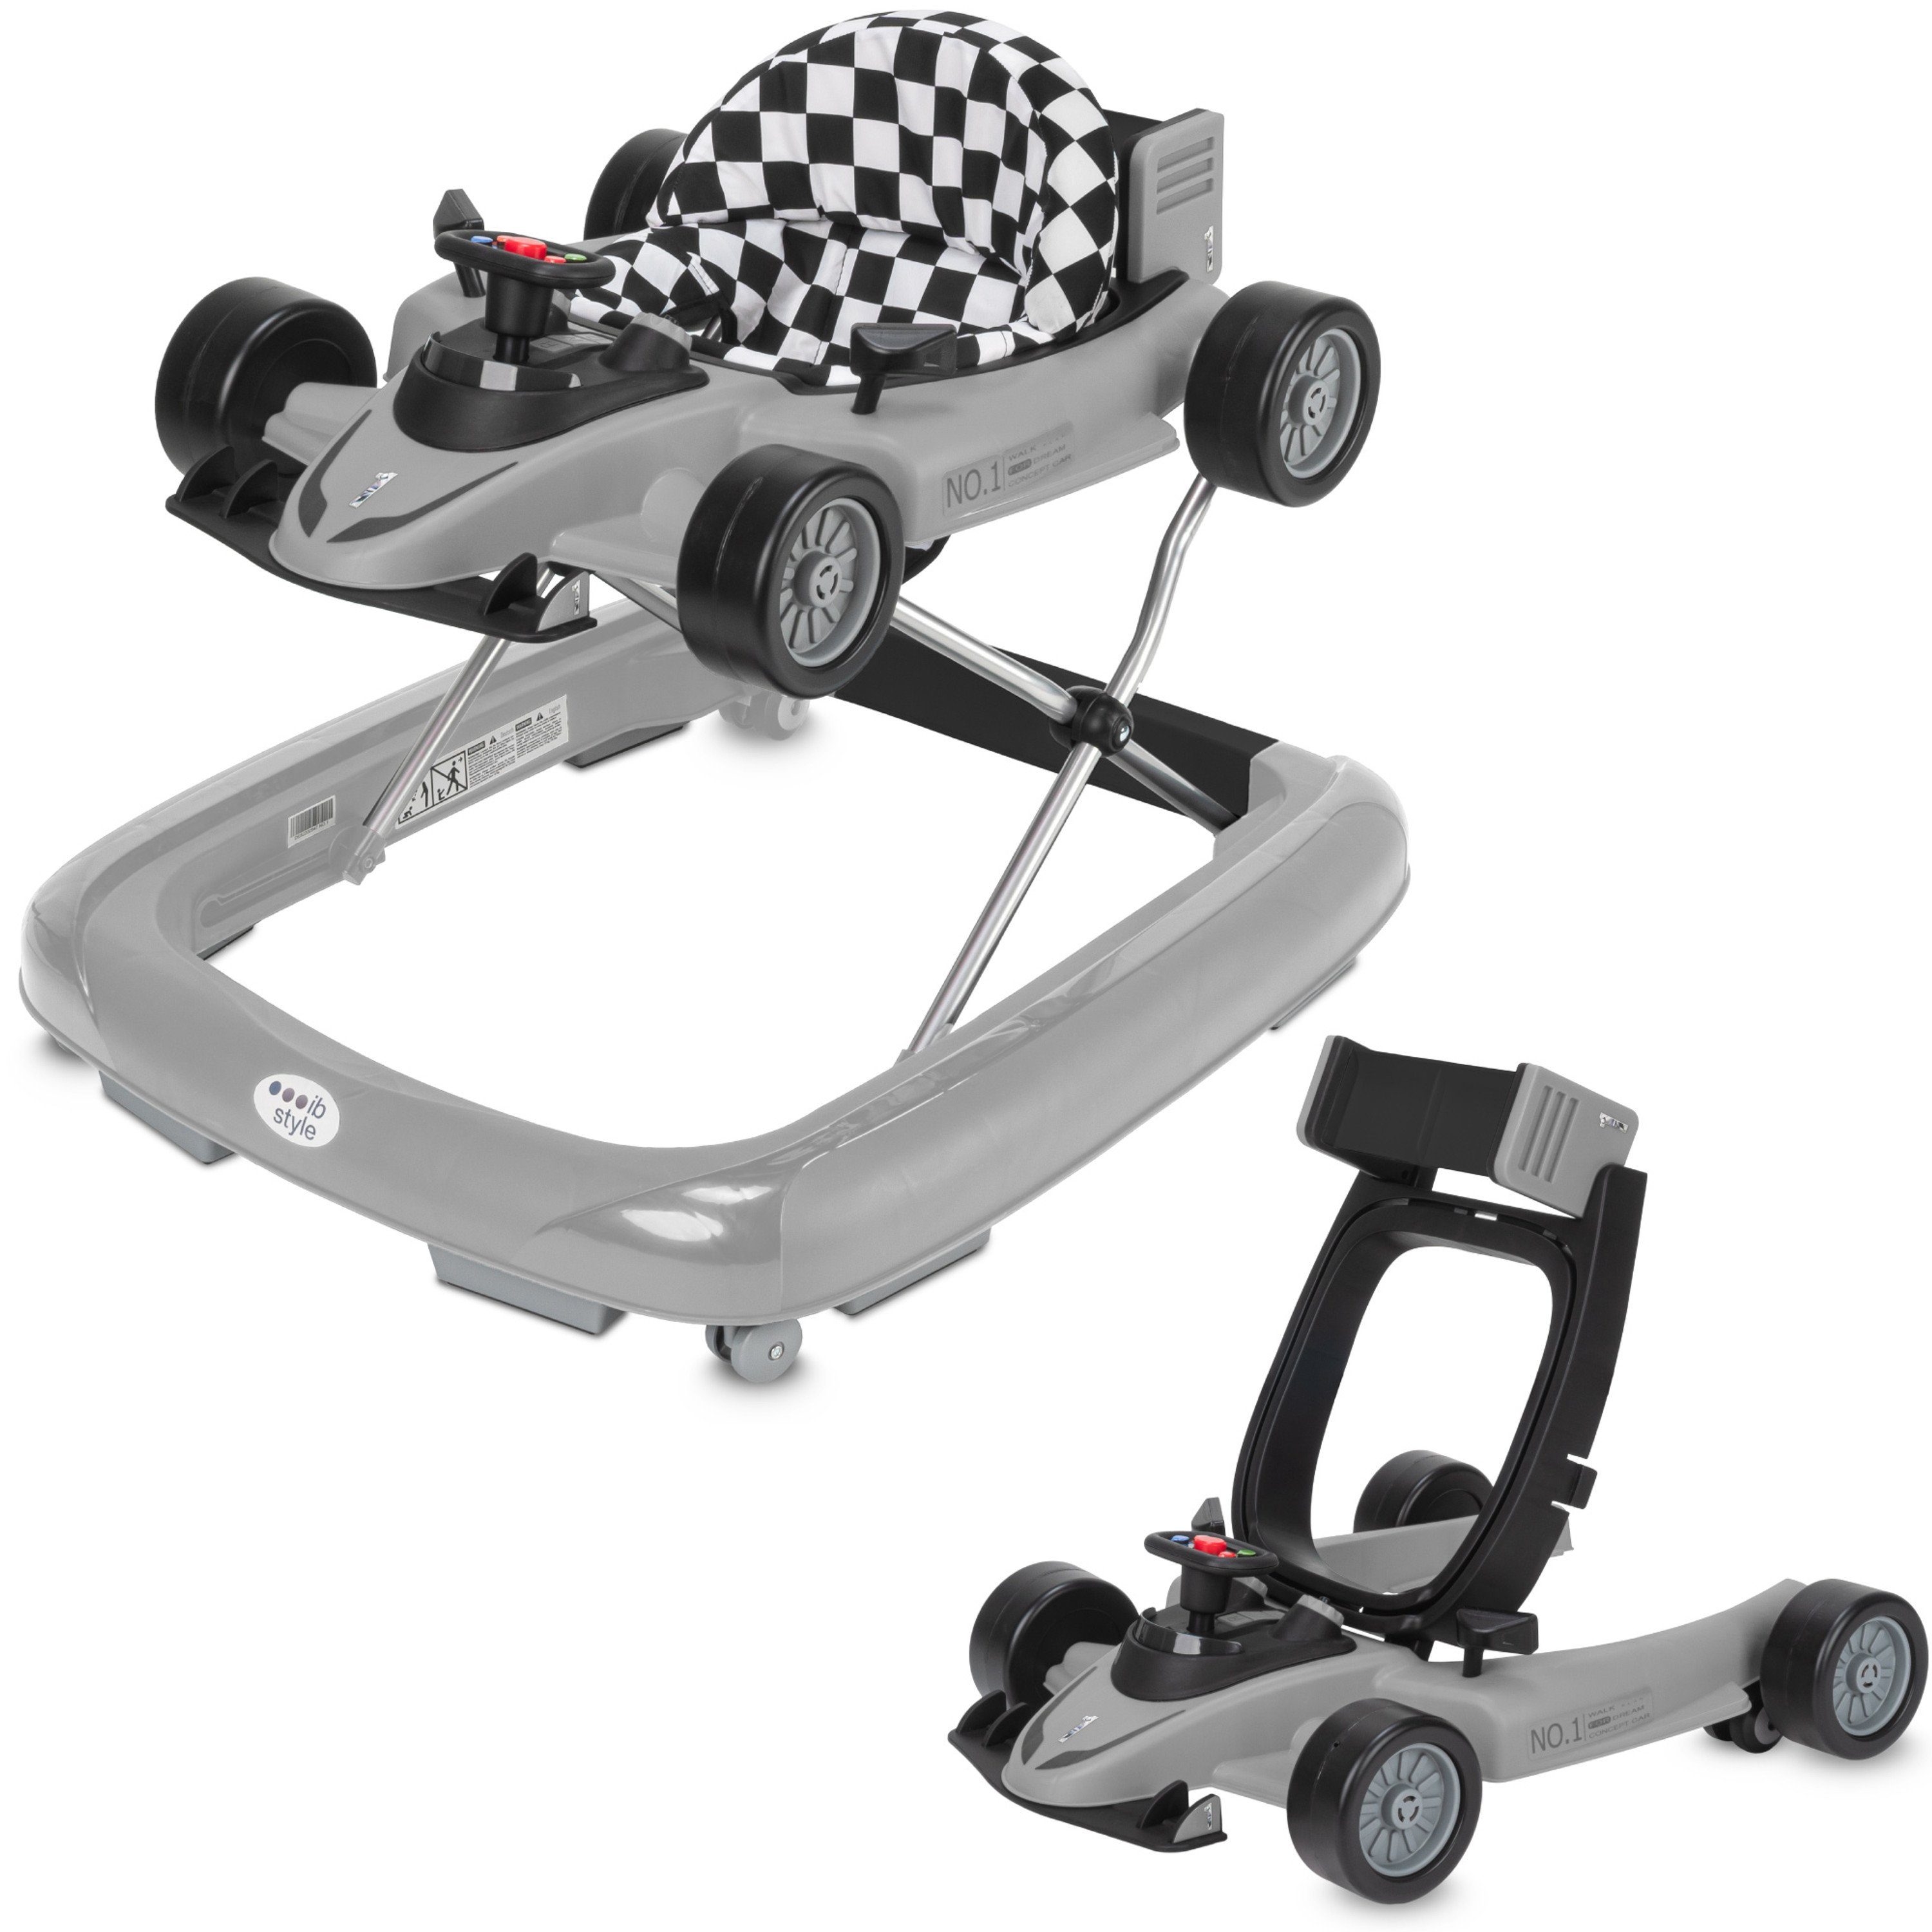 Soundeffekten Laufwagen Babywalker Abnehmbarer Lauflernwagen Little - Grau, mit ib style Lauflernhilfe Speedster